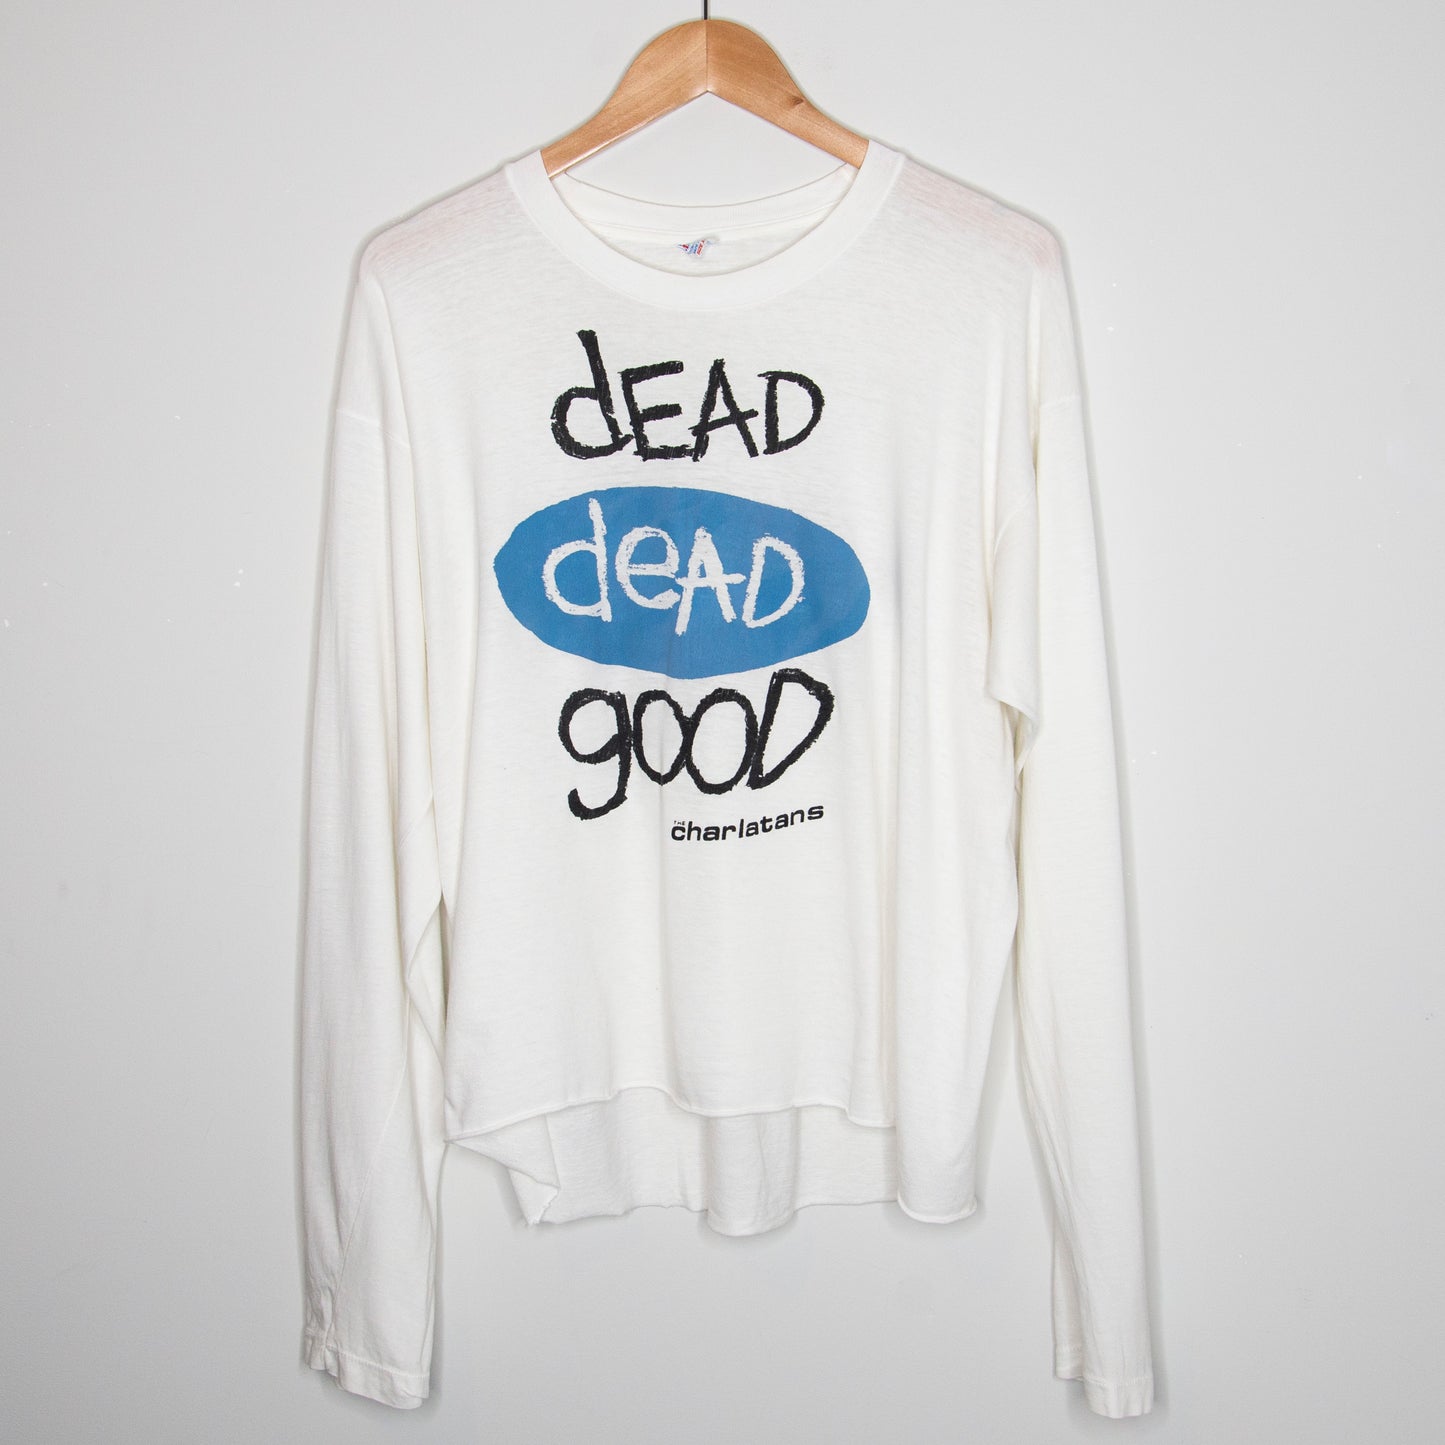 1990 The Charlatans 'Dead Dead Good' Long Sleeve Medium